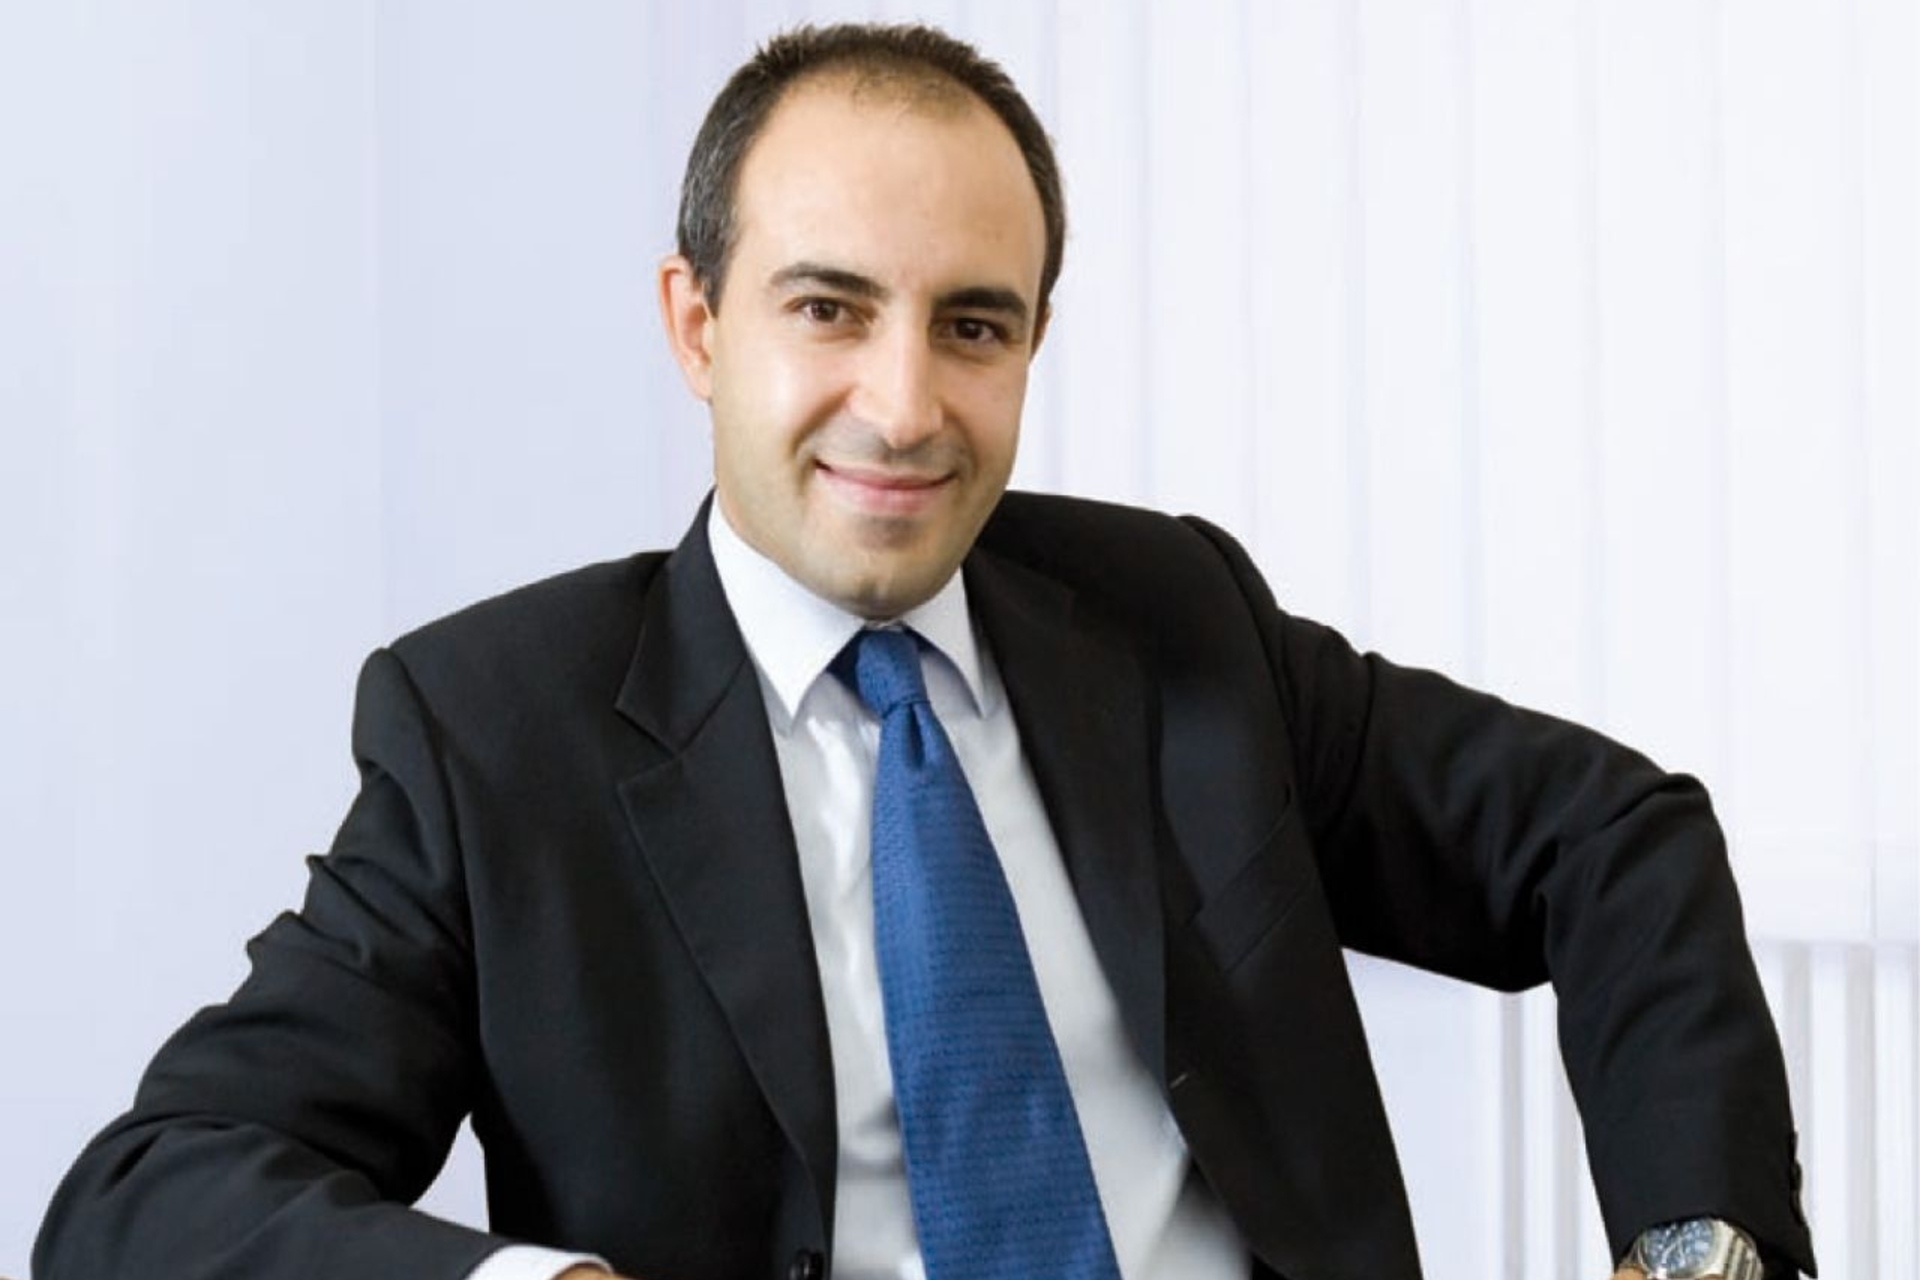 Fabio Pagano adalah CEO SitoVivo